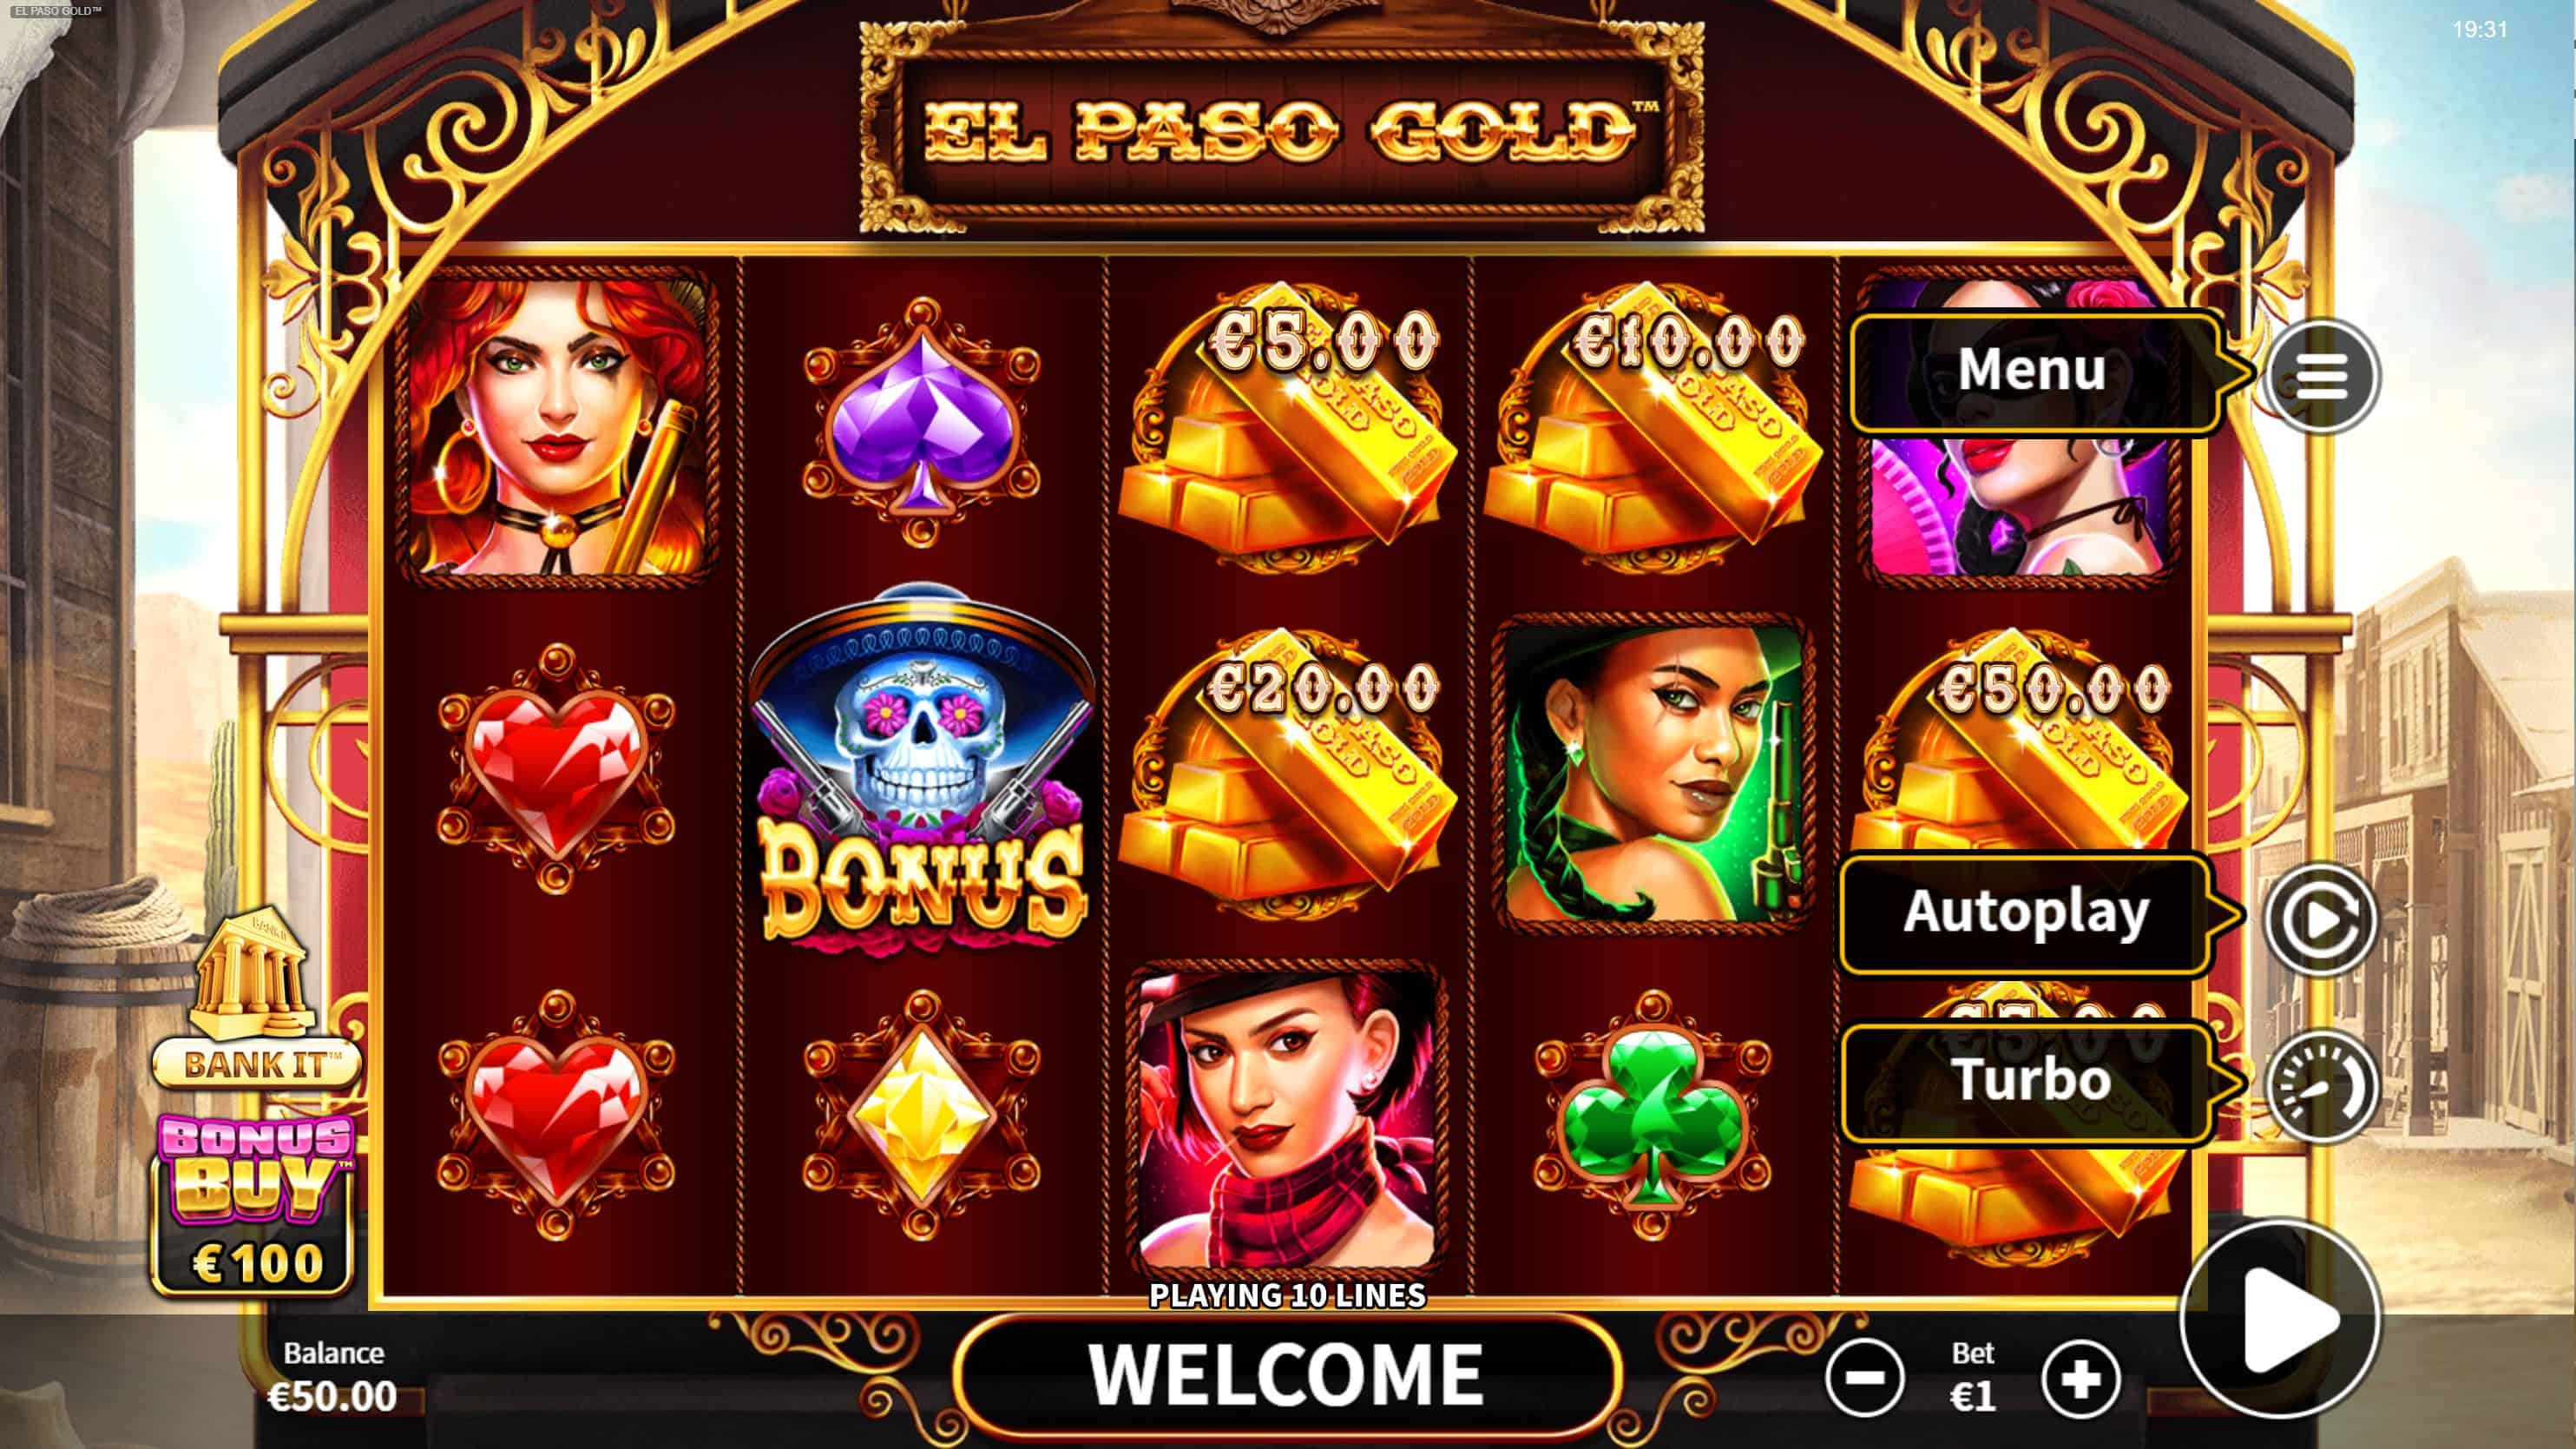 El Paso Gold Slot Game Free Play at Casino Ireland 01